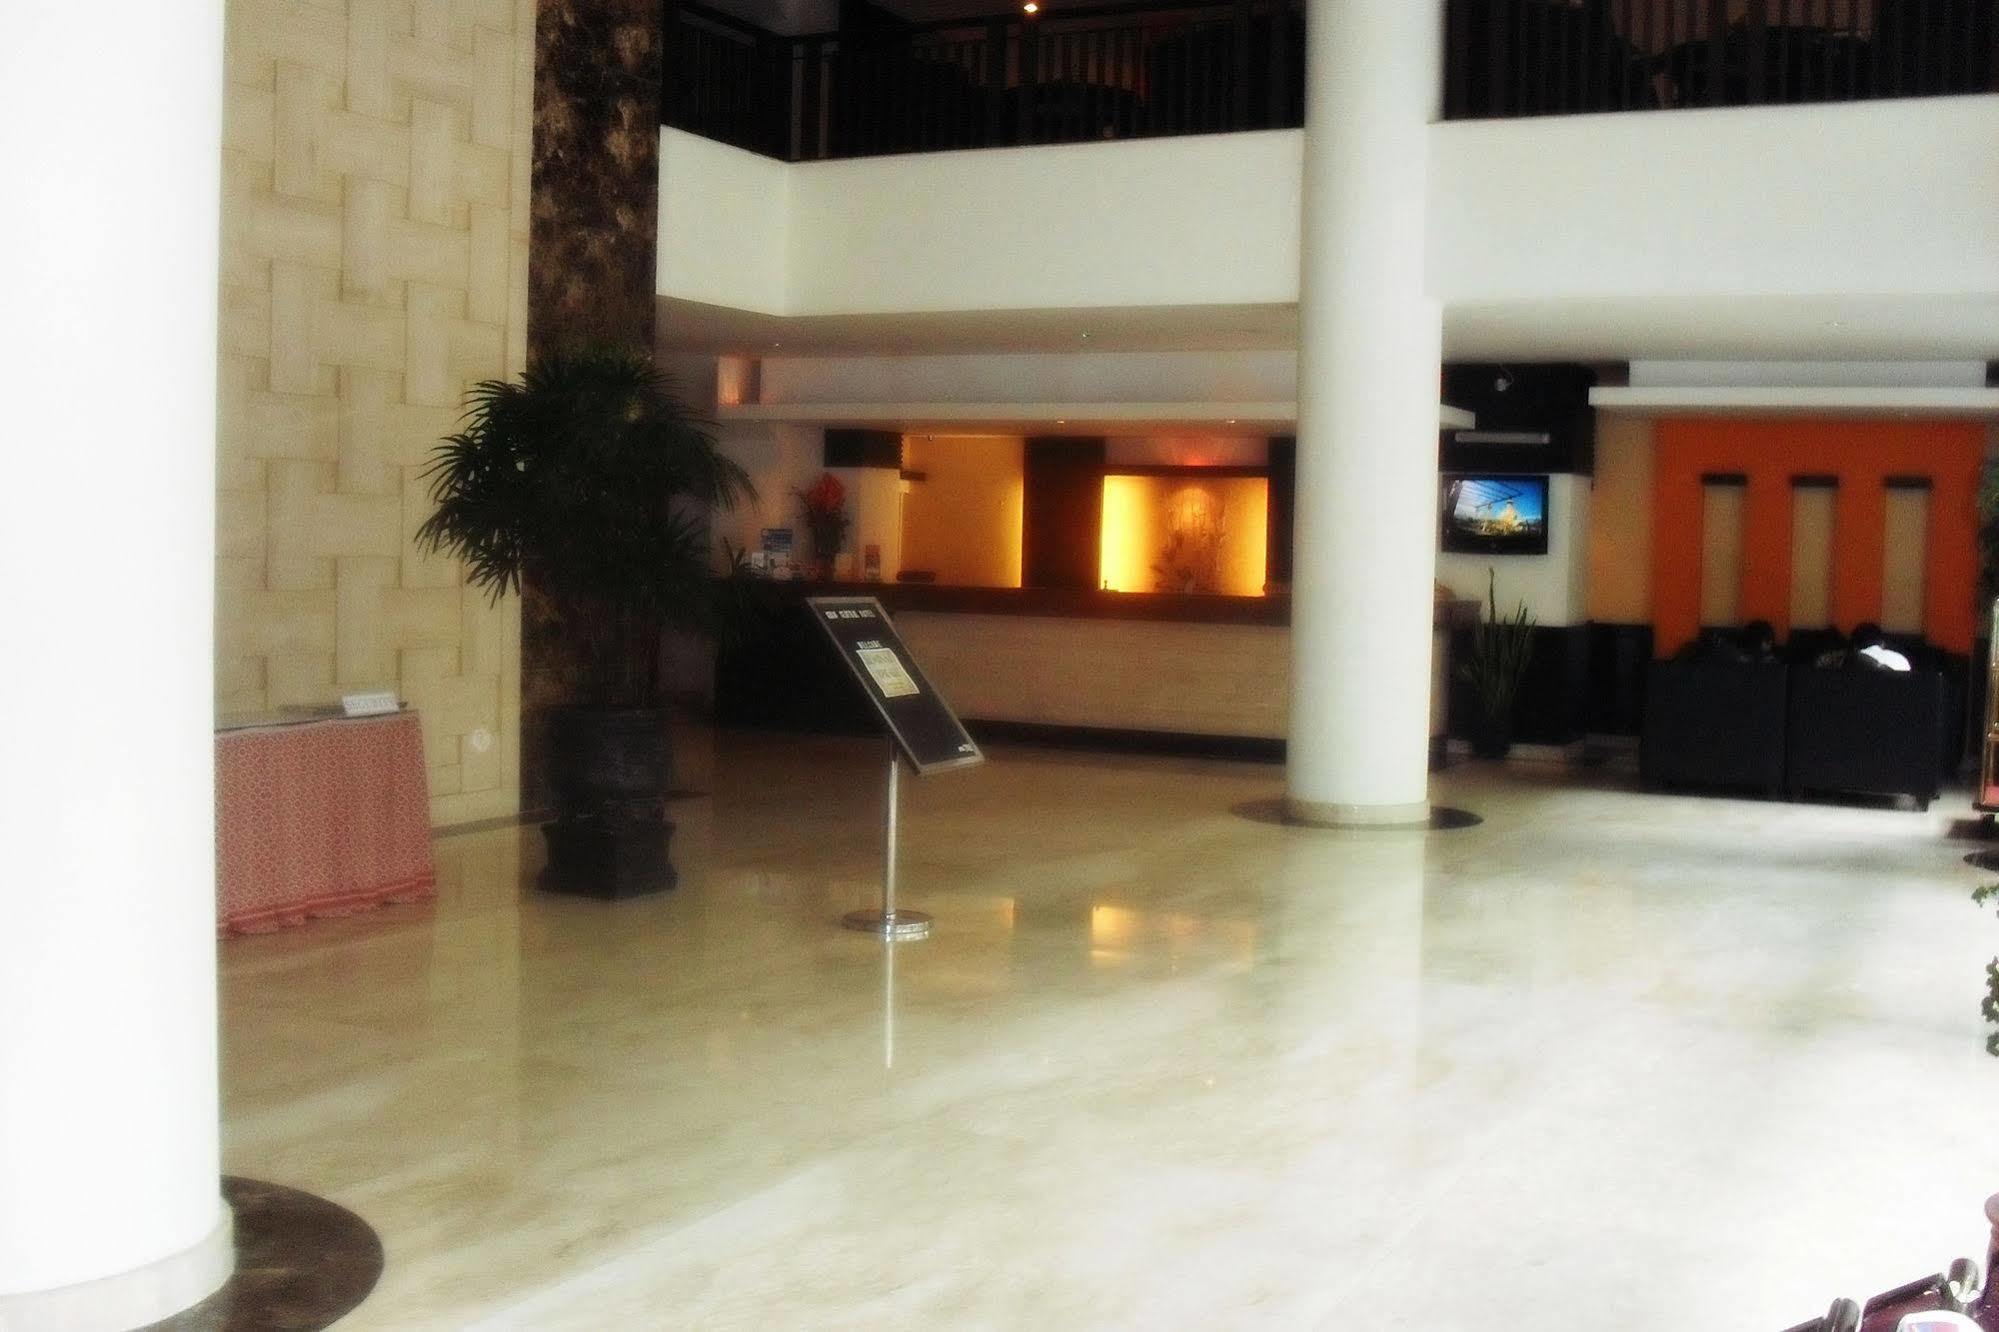 Hotel Gran Central Manado Esterno foto